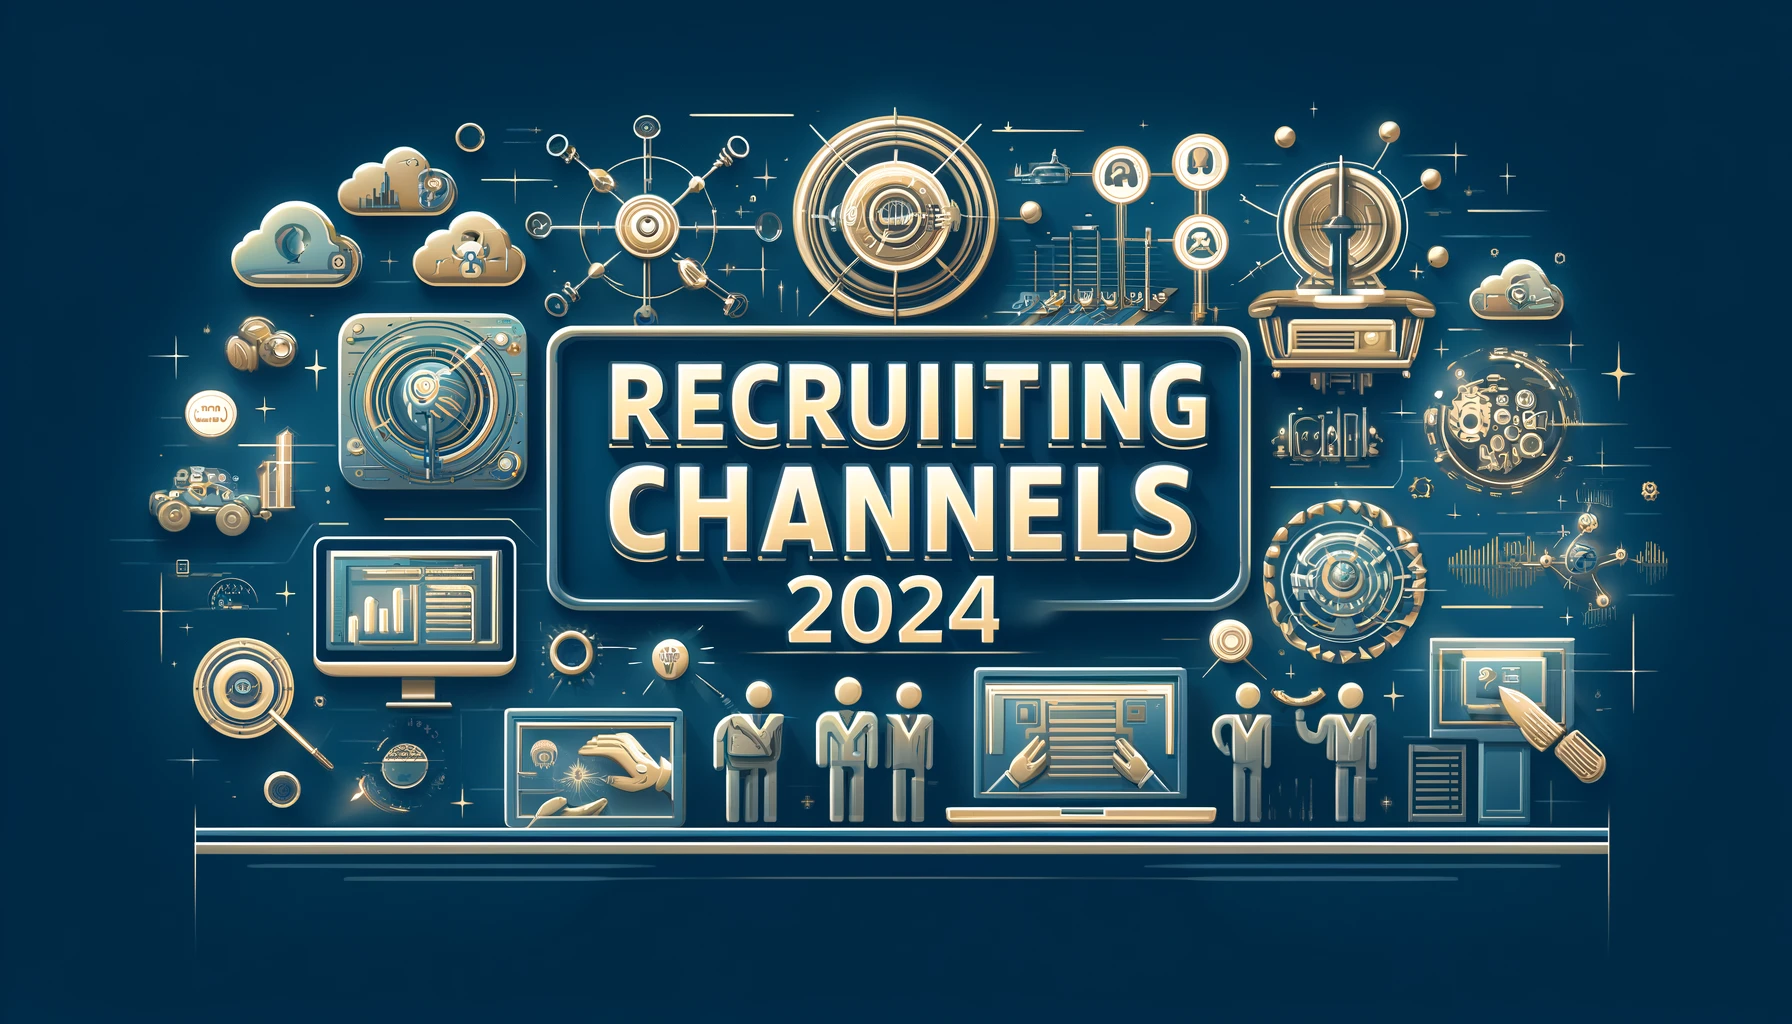 Professionelles Blog-Headerbild mit der Aufschrift 'Recruiting Channels 2024', das verschiedene Recruiting-Methoden darstellt, einschließlich Online-Jobbörsen, soziale Medien, Networking-Events und Bildungspartnerschaften, in einem modernen und futuristischen Stil für ein professionelles Publikum.